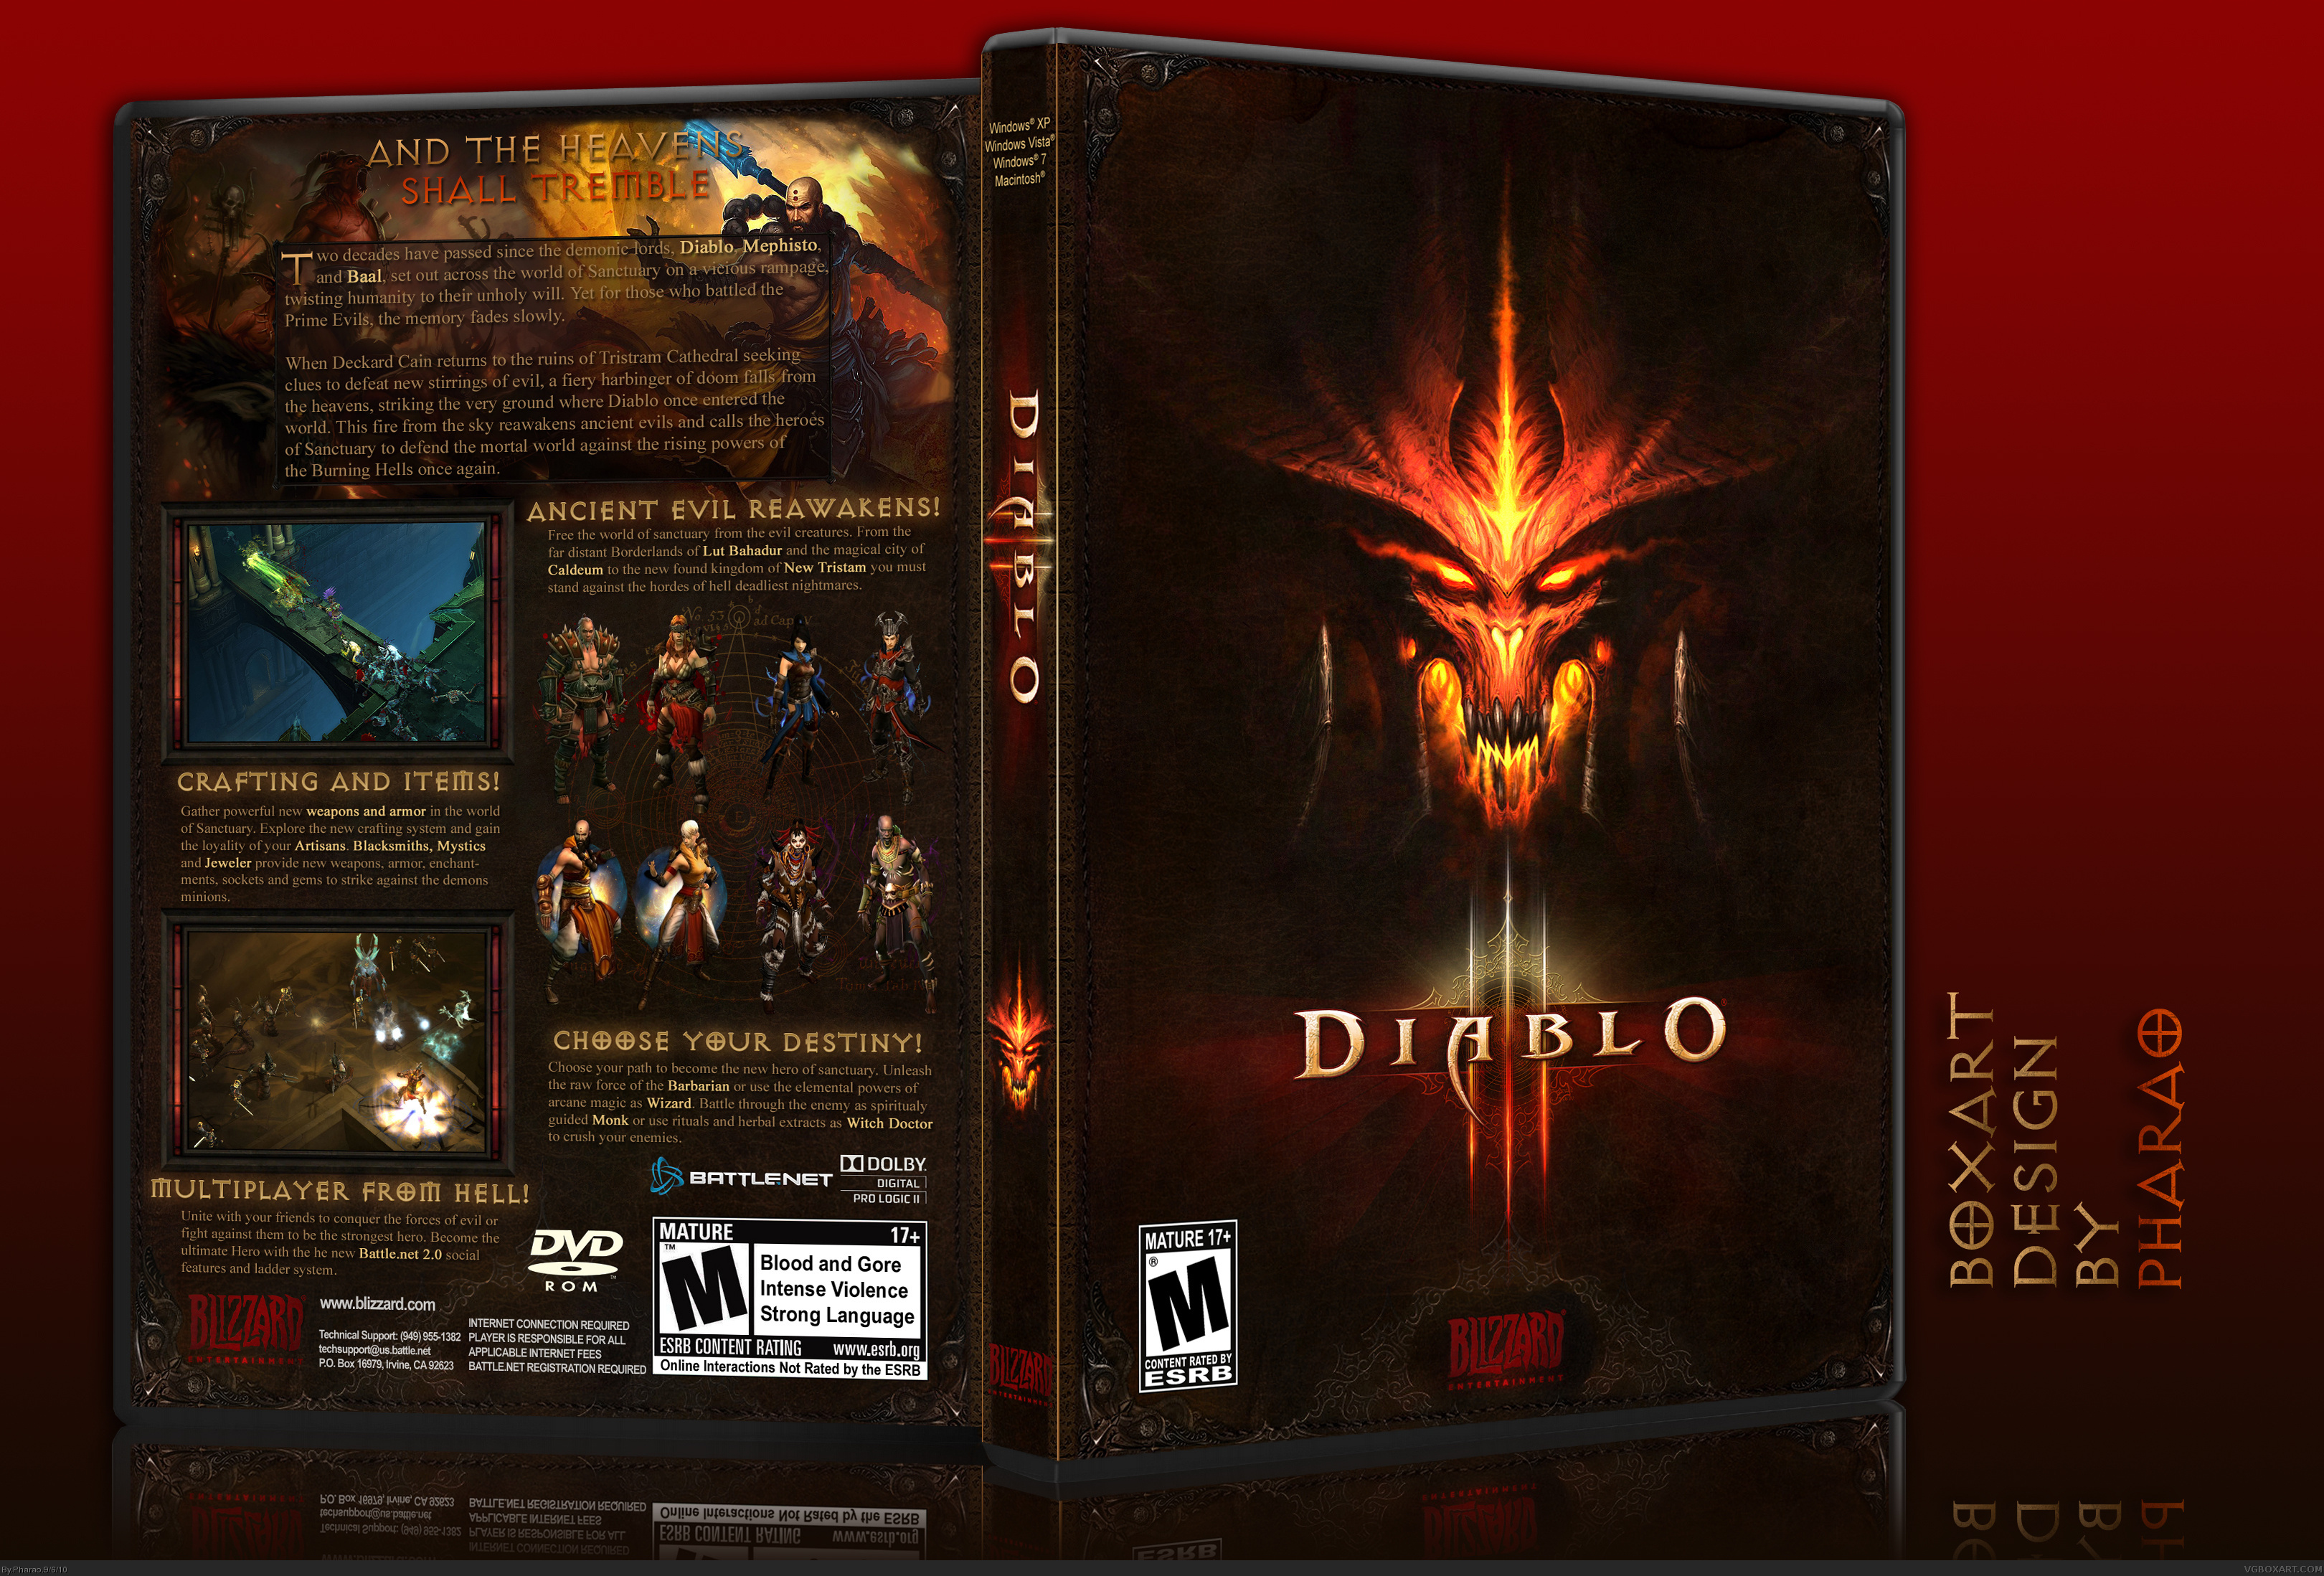 Diablo III 3 Cover Carton Box and Cd BOX Case only no Game Code